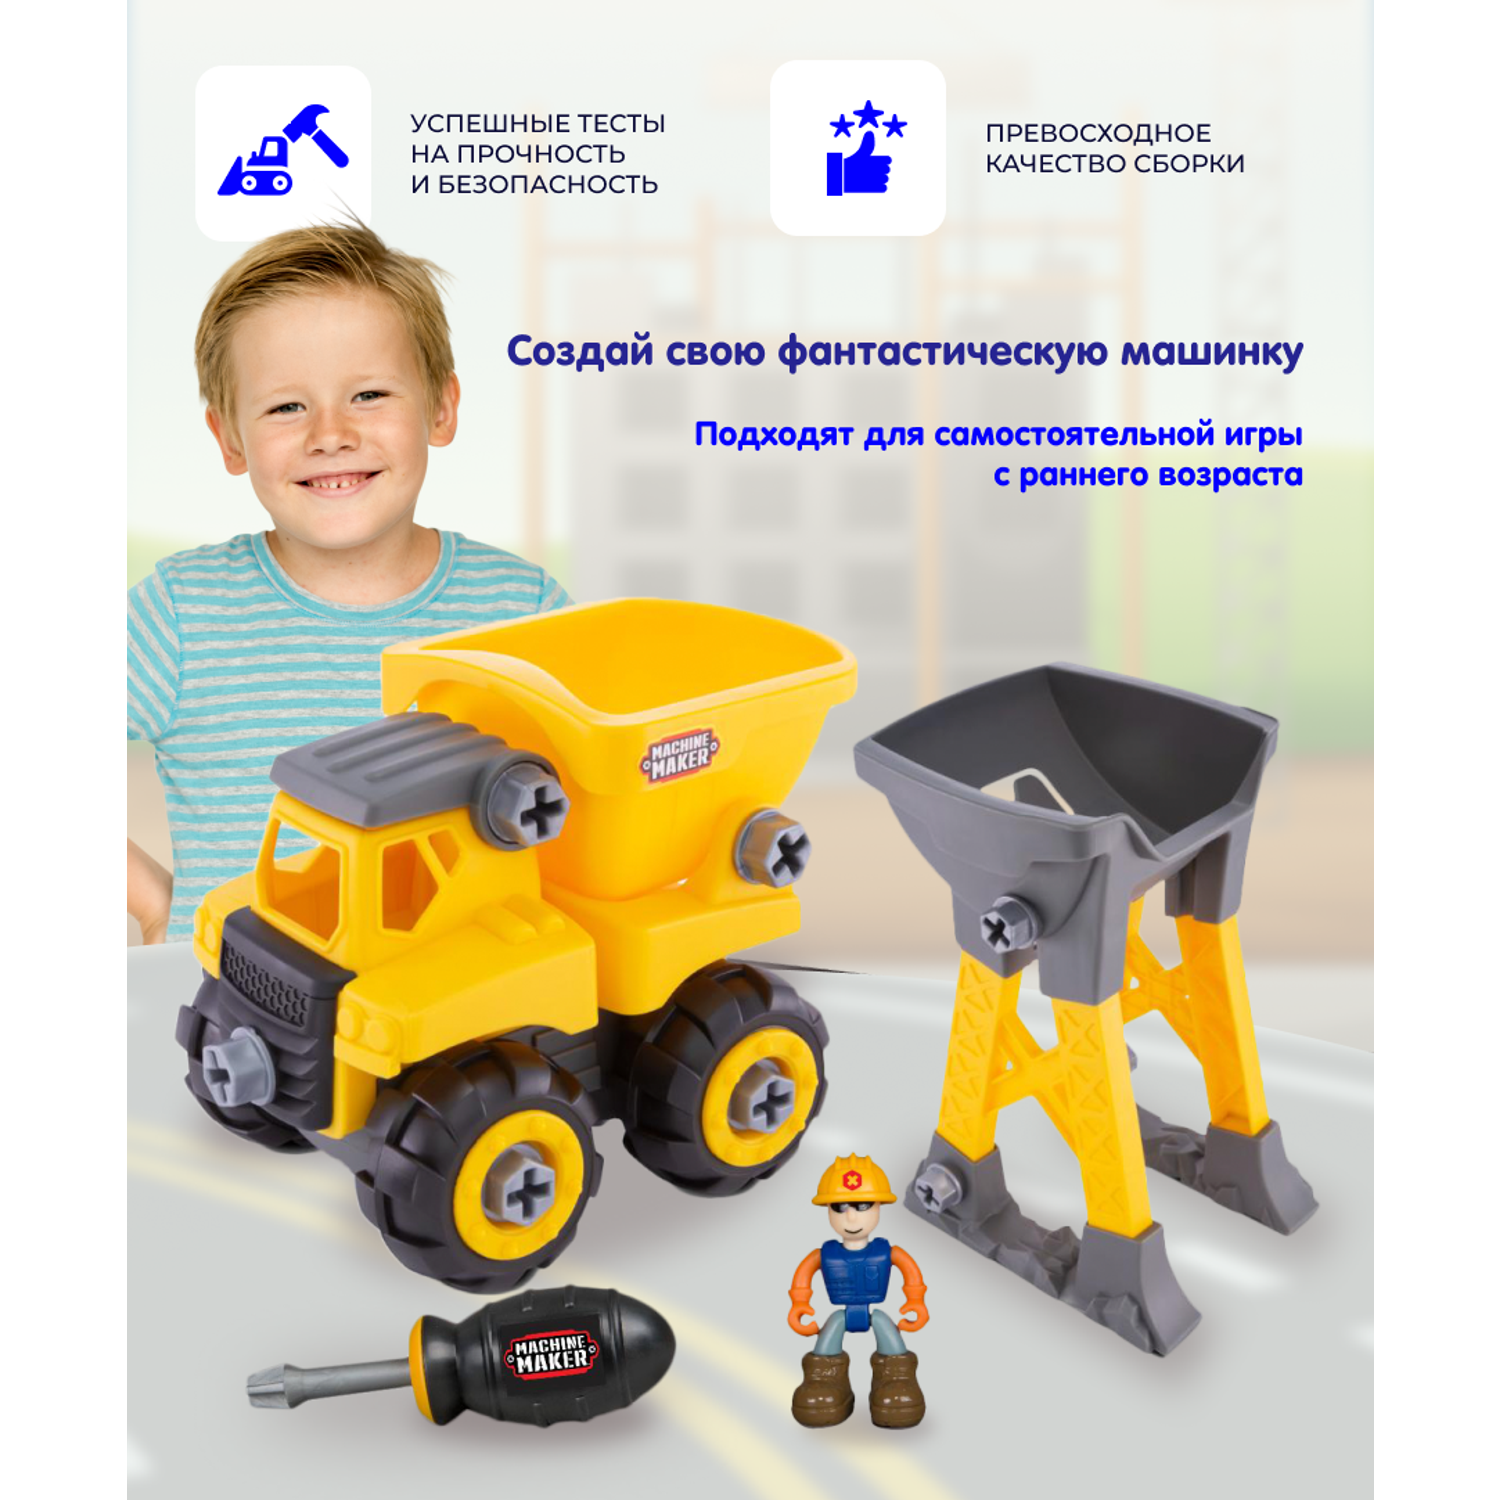 Набор NIKKO Junior Builder - Самосвал Погрузчик с аксессуарами 40021 - фото 2